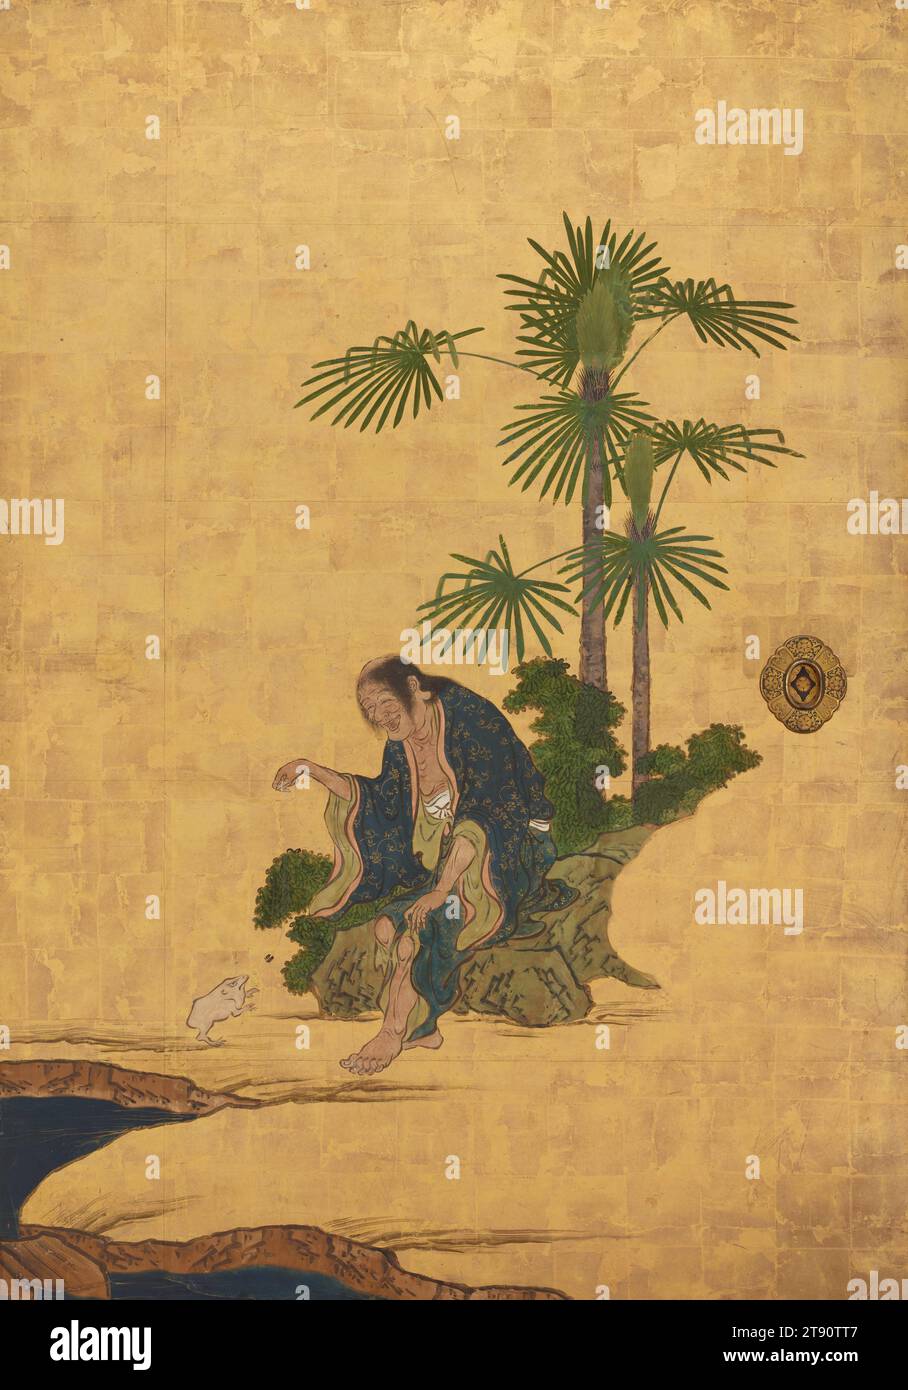 Liu Haichan Right of the Set Daoist Unsterbliche, 1646, Kano Sansetsu, Japanisch, 1589 - 1651, 65 1/2 x 45 1/2 Zoll (166,37 x 115,57 cm) (Bild)69 x 49 x 3/4 Zoll (175,26 x 124,46 x 4,45 cm) (Außenrahmen), Tinte, Farbe und Blattgold auf Papier, Japan, 17. Jahrhundert, diese Schiebetürpaneele (fusuma) zeigen eine Gruppe chinesischer Daoistischer Unsterblicher. Die Chinesen glaubten, die Unsterblichen seien historische und legendäre Persönlichkeiten, die es durch moralische Tugend, Glauben und Disziplin schafften, die Grenzen der natürlichen Welt zu überschreiten und ewig zu leben. Sie wurden als Heilige verehrt. Stockfoto